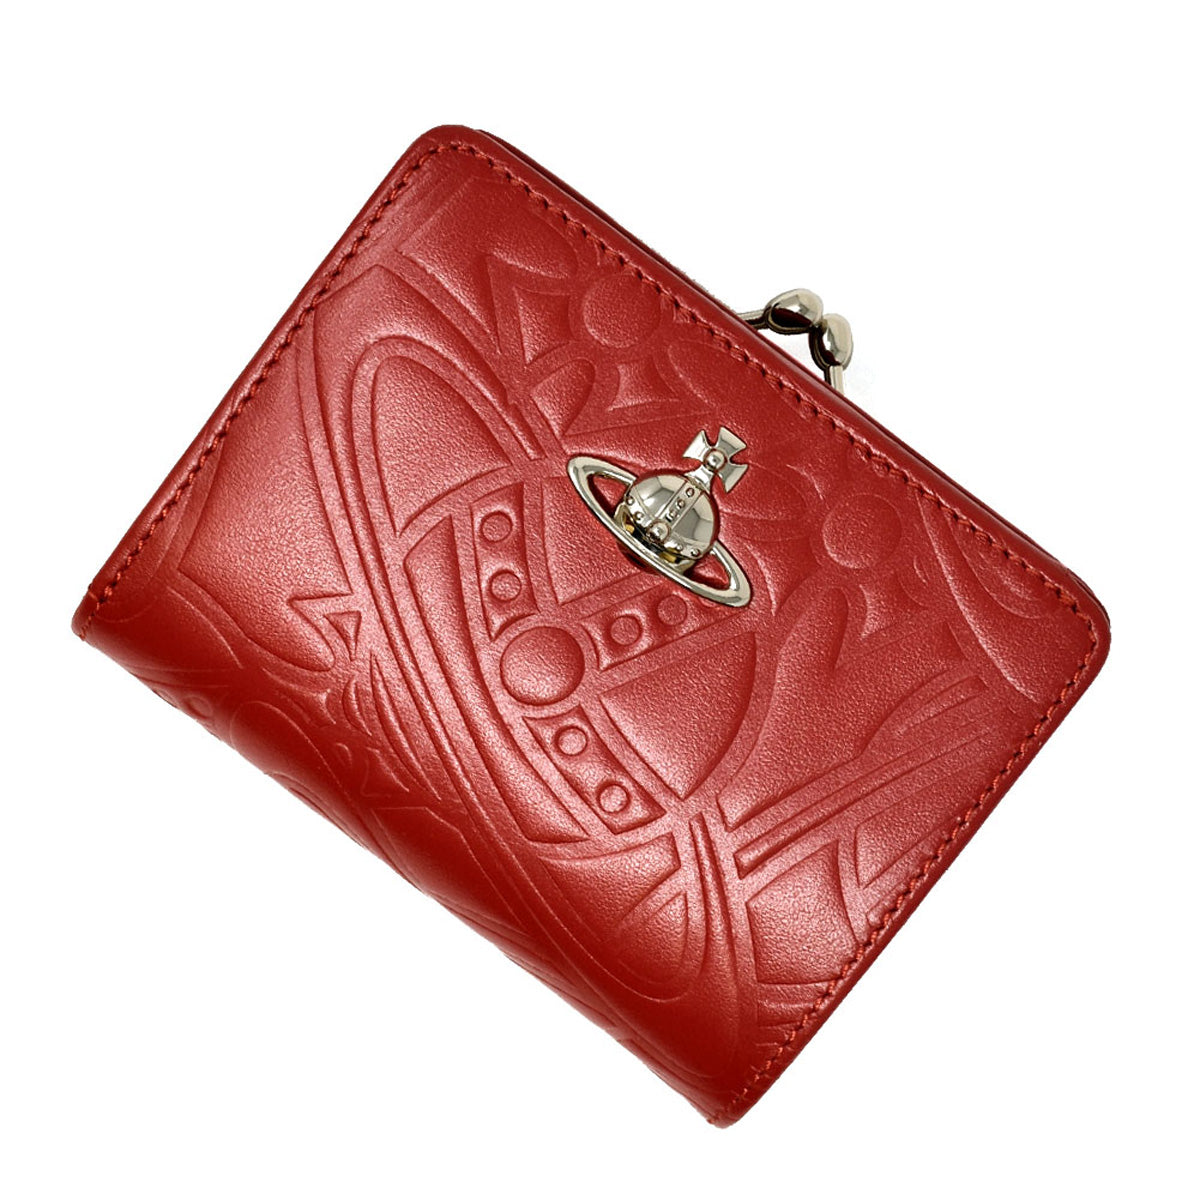 Vivienne Westwood ヴィヴィアンウエストウッド 財布 レディース 二つ折り財布 がま口 RED レッド  51010020-41227-H401 PIMLICO WALLET ピムリコ ウォレット